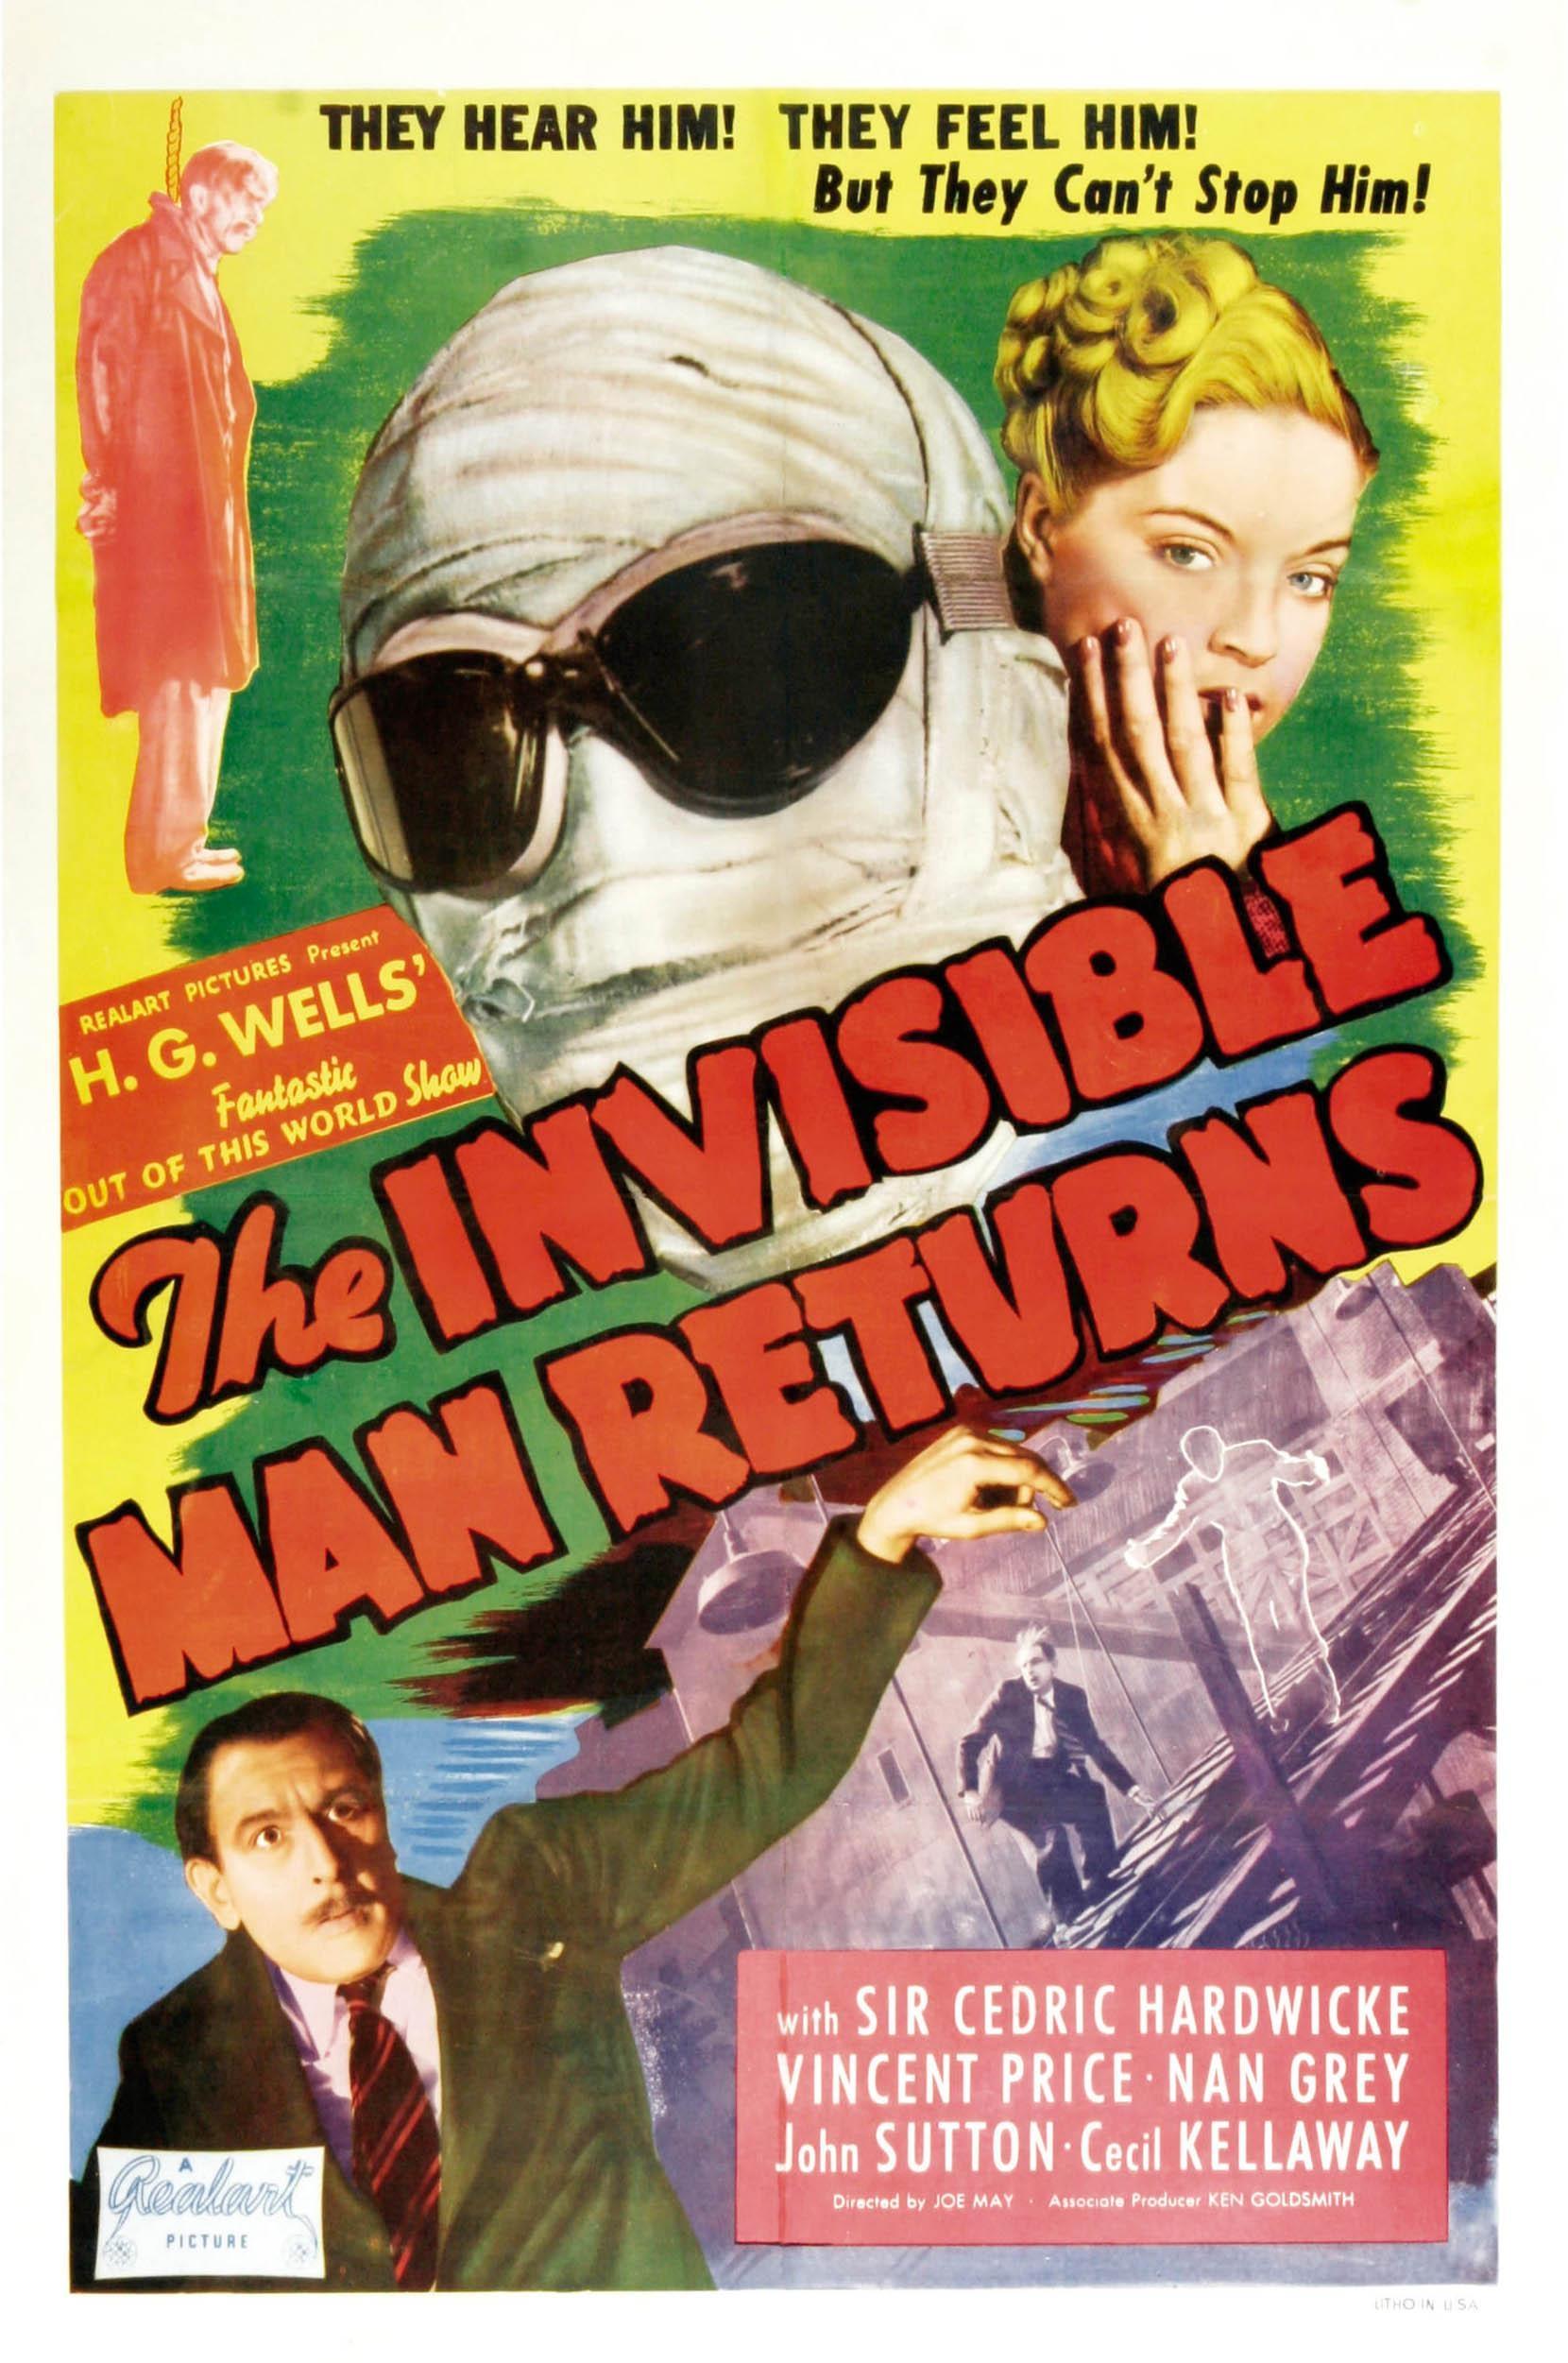 Постер фильма Человек-невидимка возвращается | Invisible Man Returns